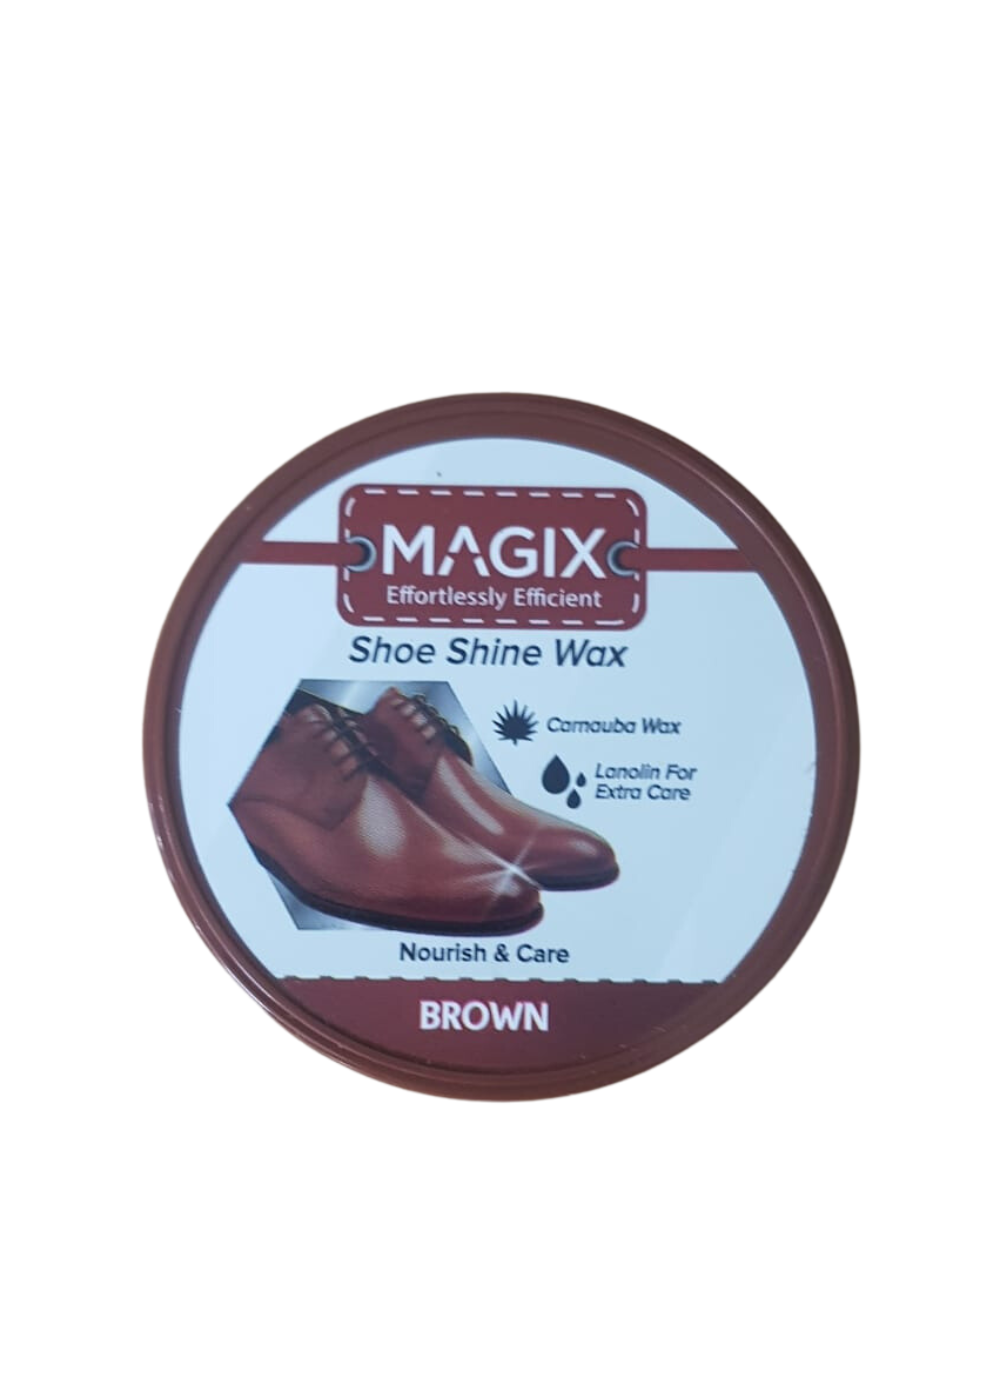 MAGIX Shoe Shine Wax